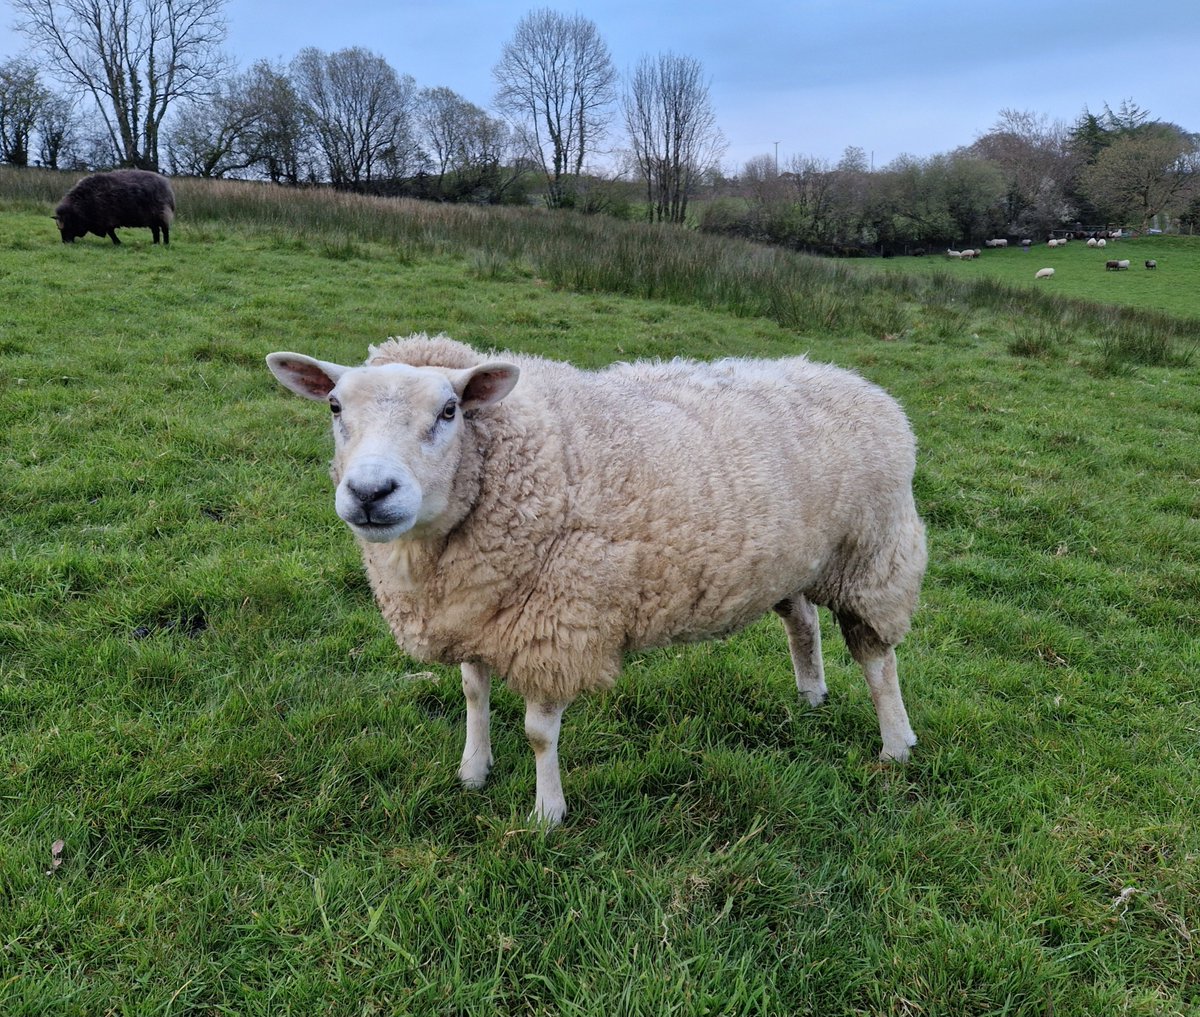 Evening rounds with Alys ❤️

#animalsanctuary #sheep365 #sheep #texelsheep #nonprofit #amazonwishlist #sponsorasheep #AnimalLovers #foreverhome 

woollypatchworksheepsanctuary.uk